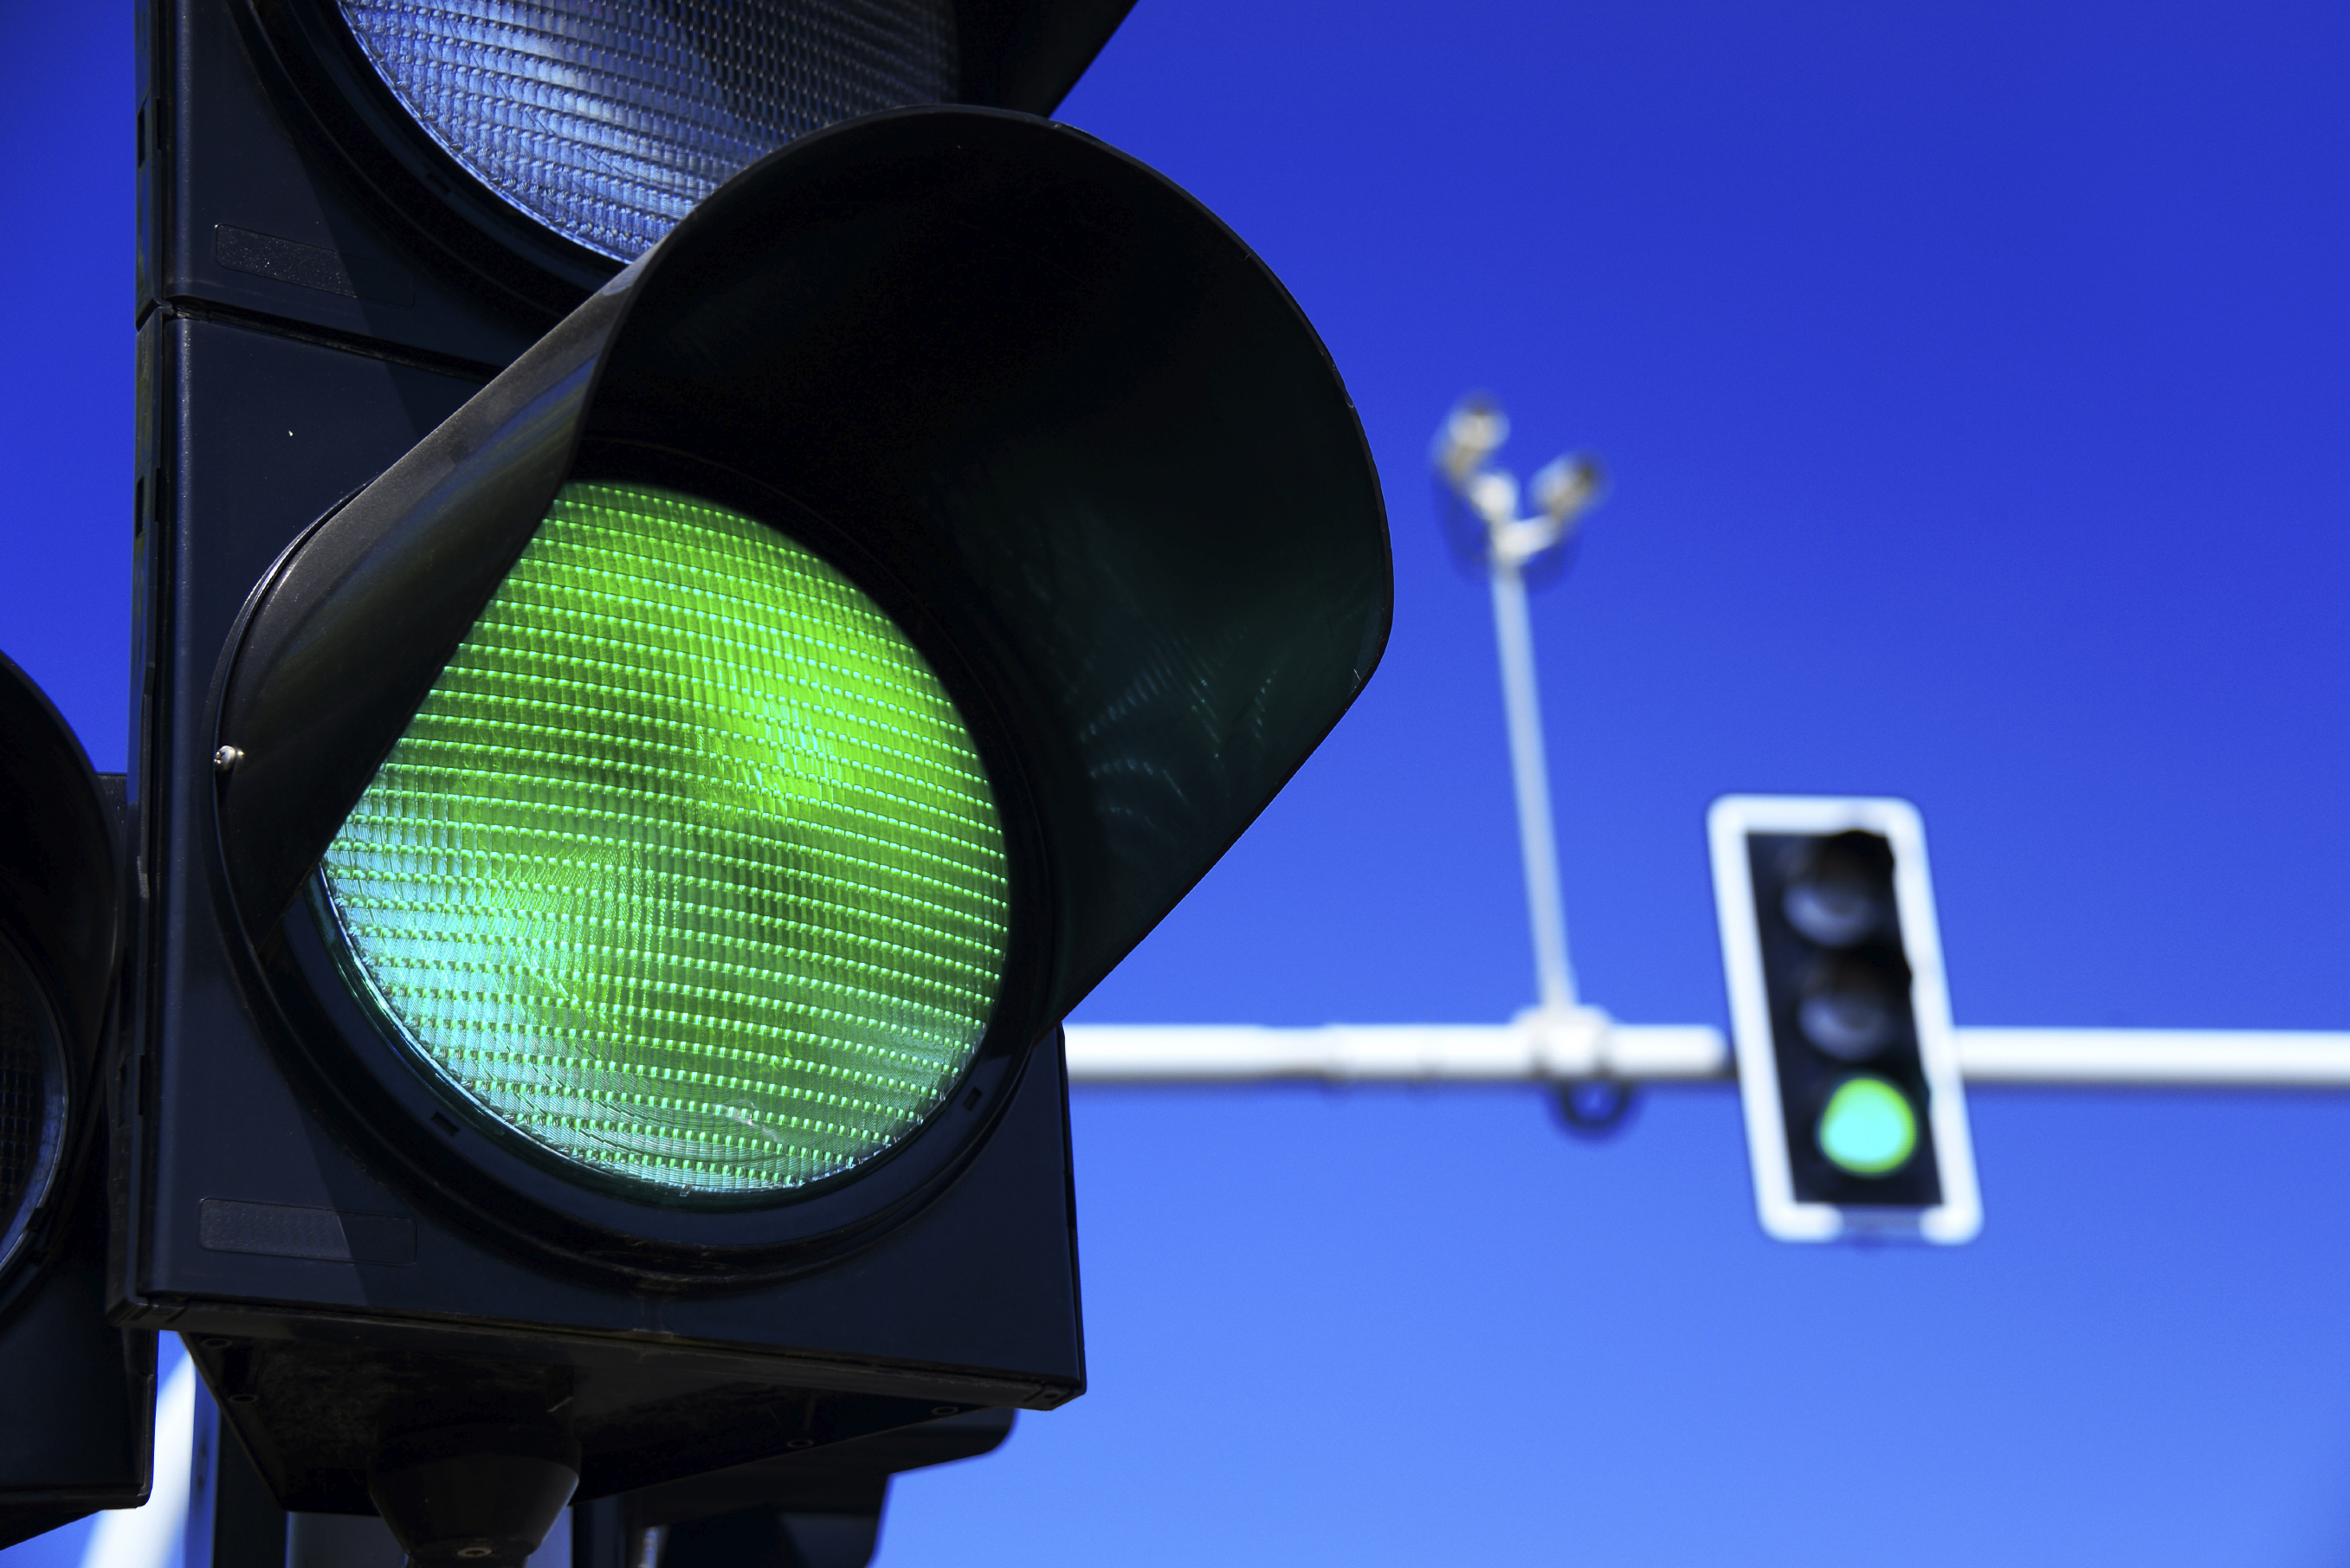 Светофоры всегда зеленые. Зеленый светофор. Зеленый сигнал светофора. Зеленый свет светофора. Зеленый цвет светофора.